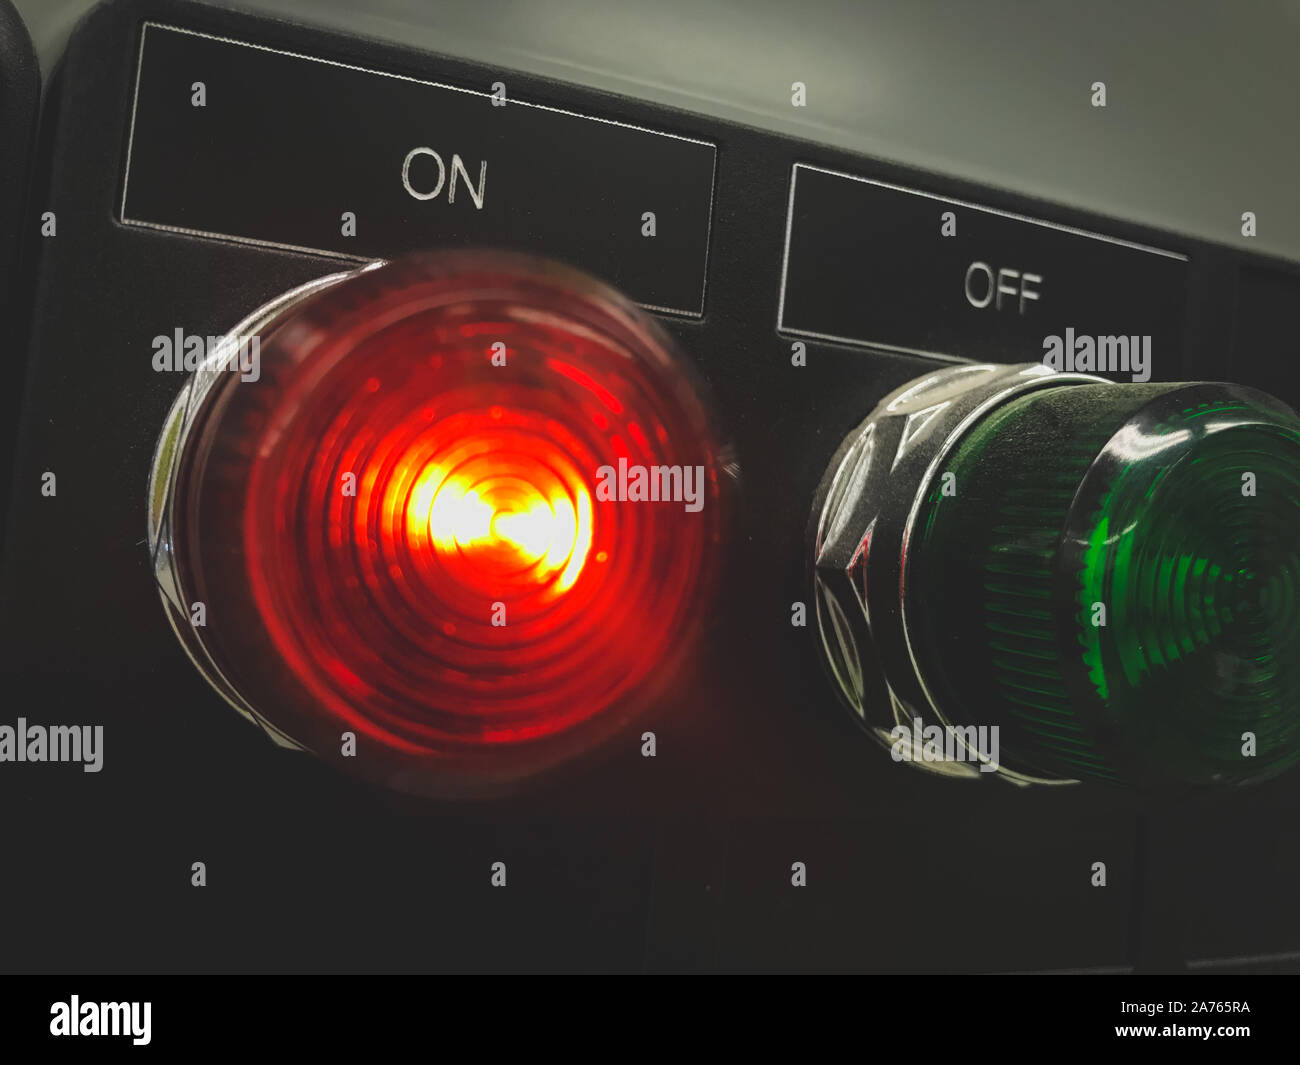 Red light on in the Motor Feeder breaker at MCC panel Stock Photo